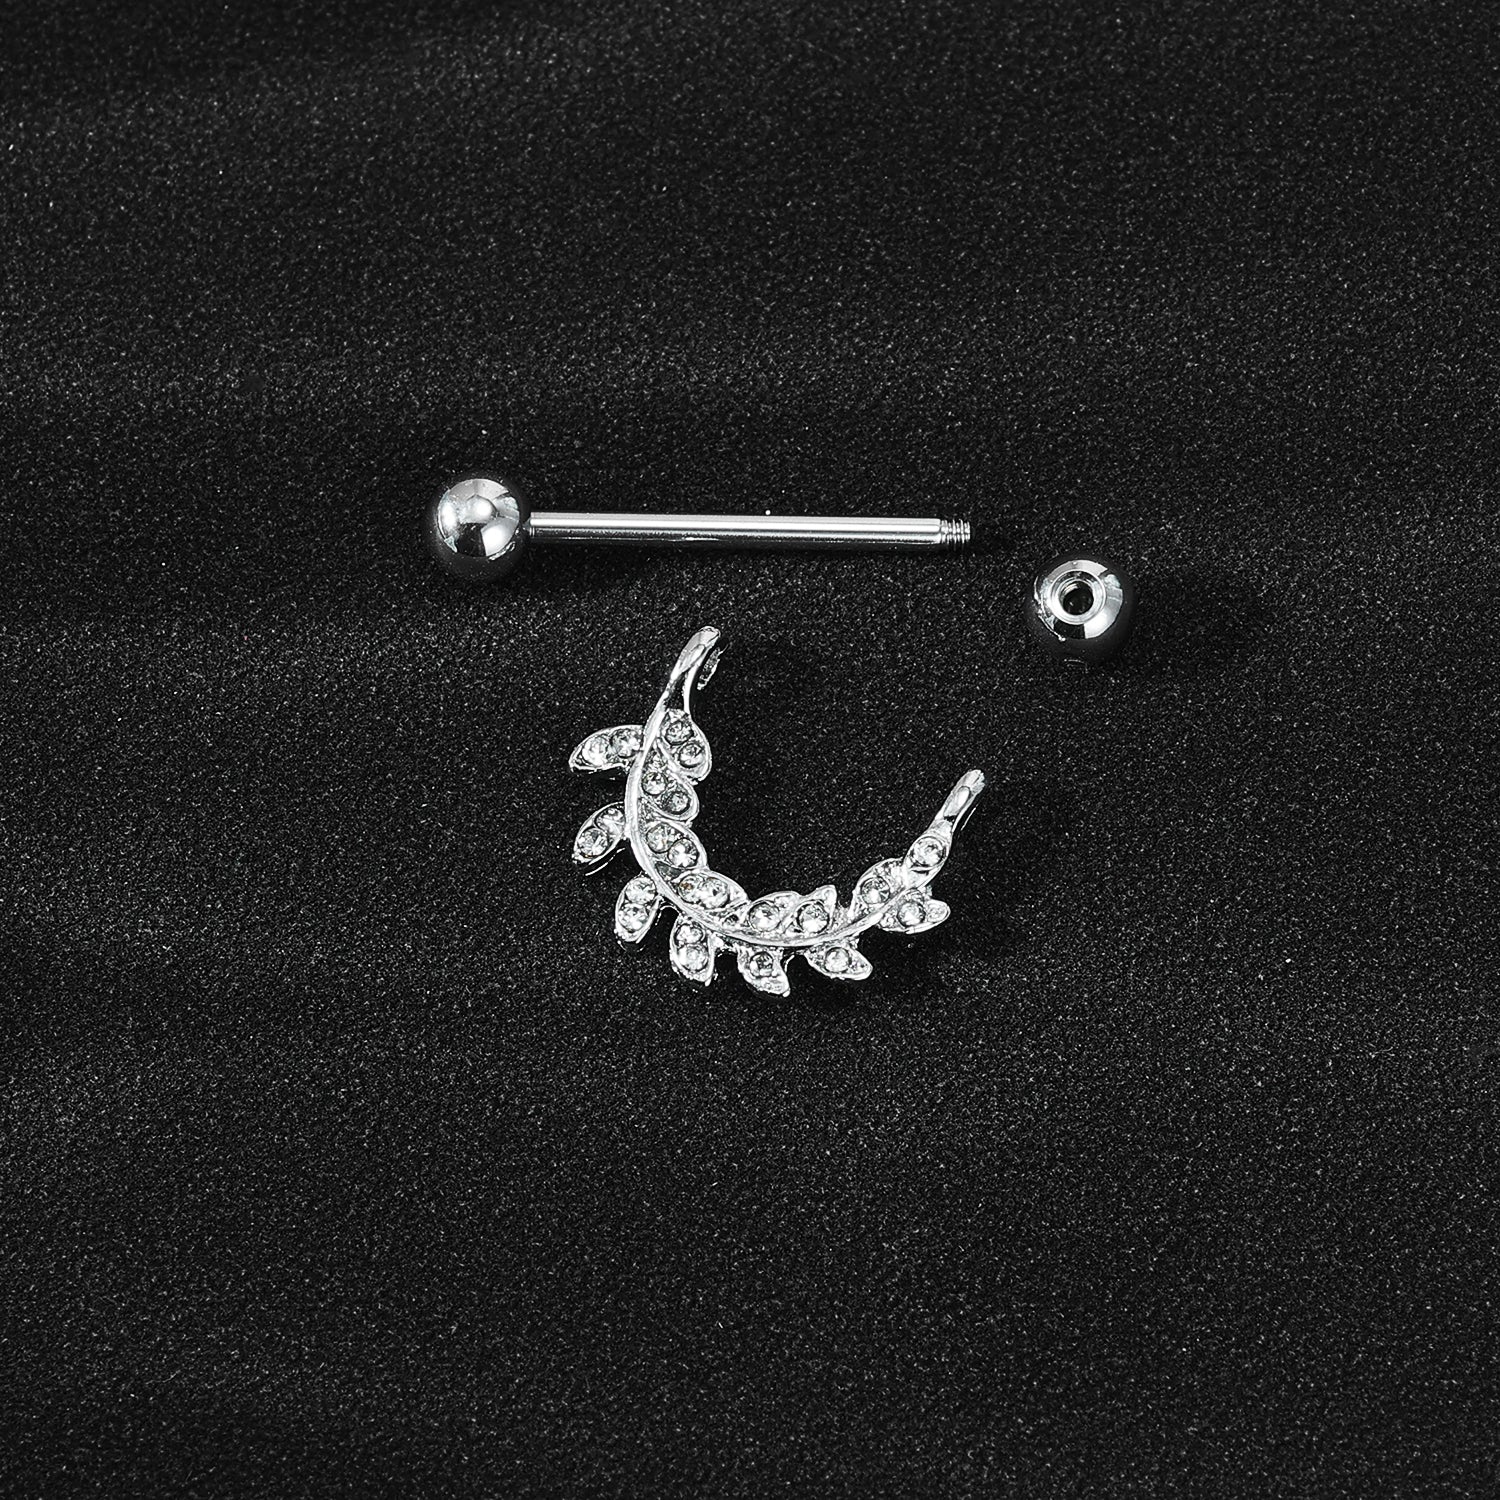 2Pcs 14G Leaves Nipple Rings Bling Crystal Nipple Piercing Barbell Jewelry